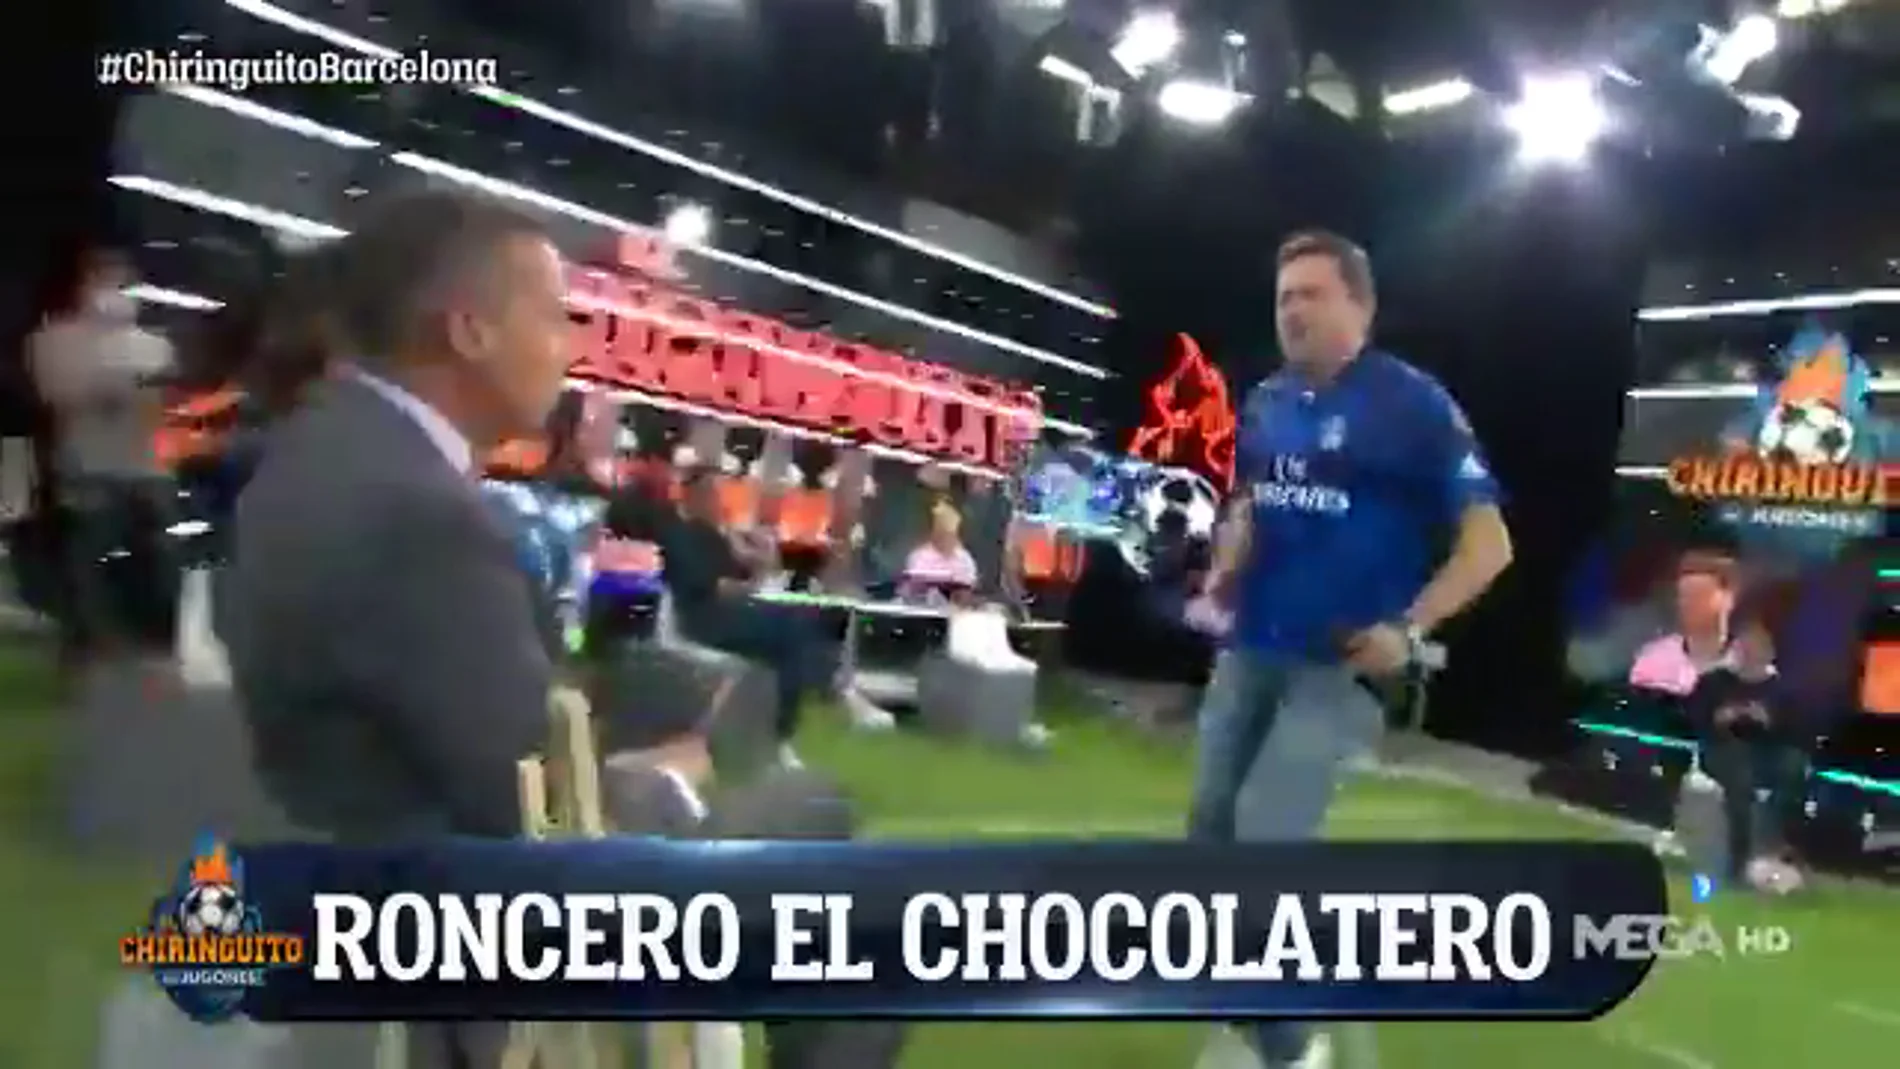 Roncero baila el Paquito el Chocolatero en la cara de Soria tras el pinchazo del Barça